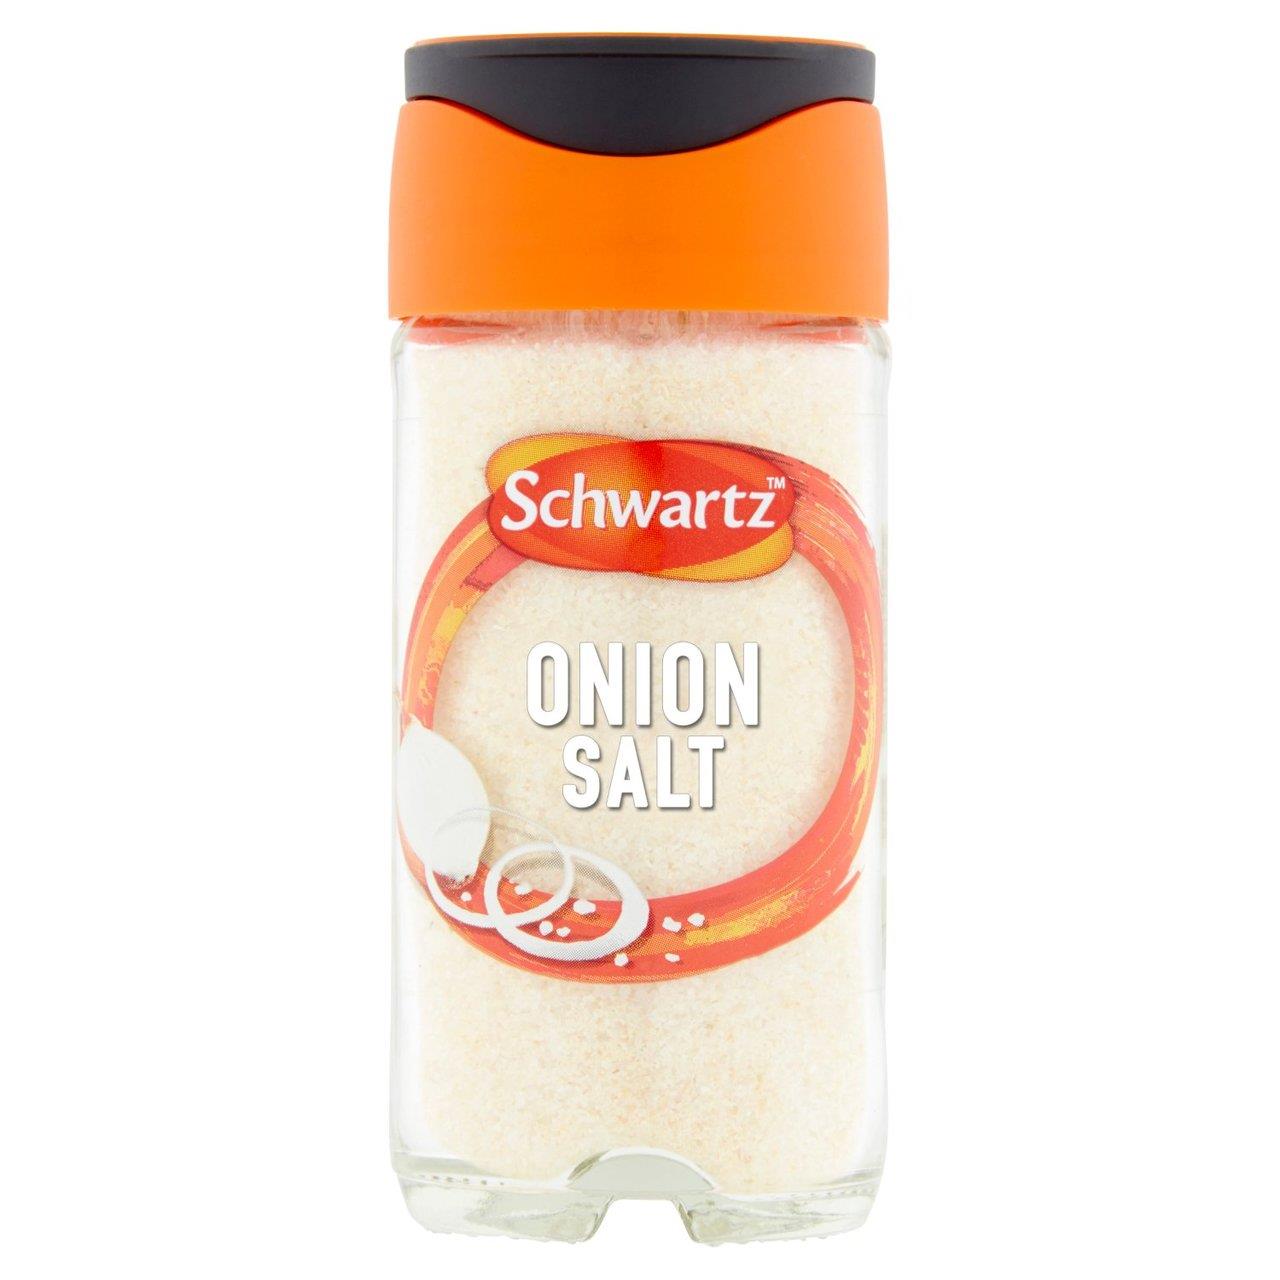 Schwartz Onion Salt Jar 65g